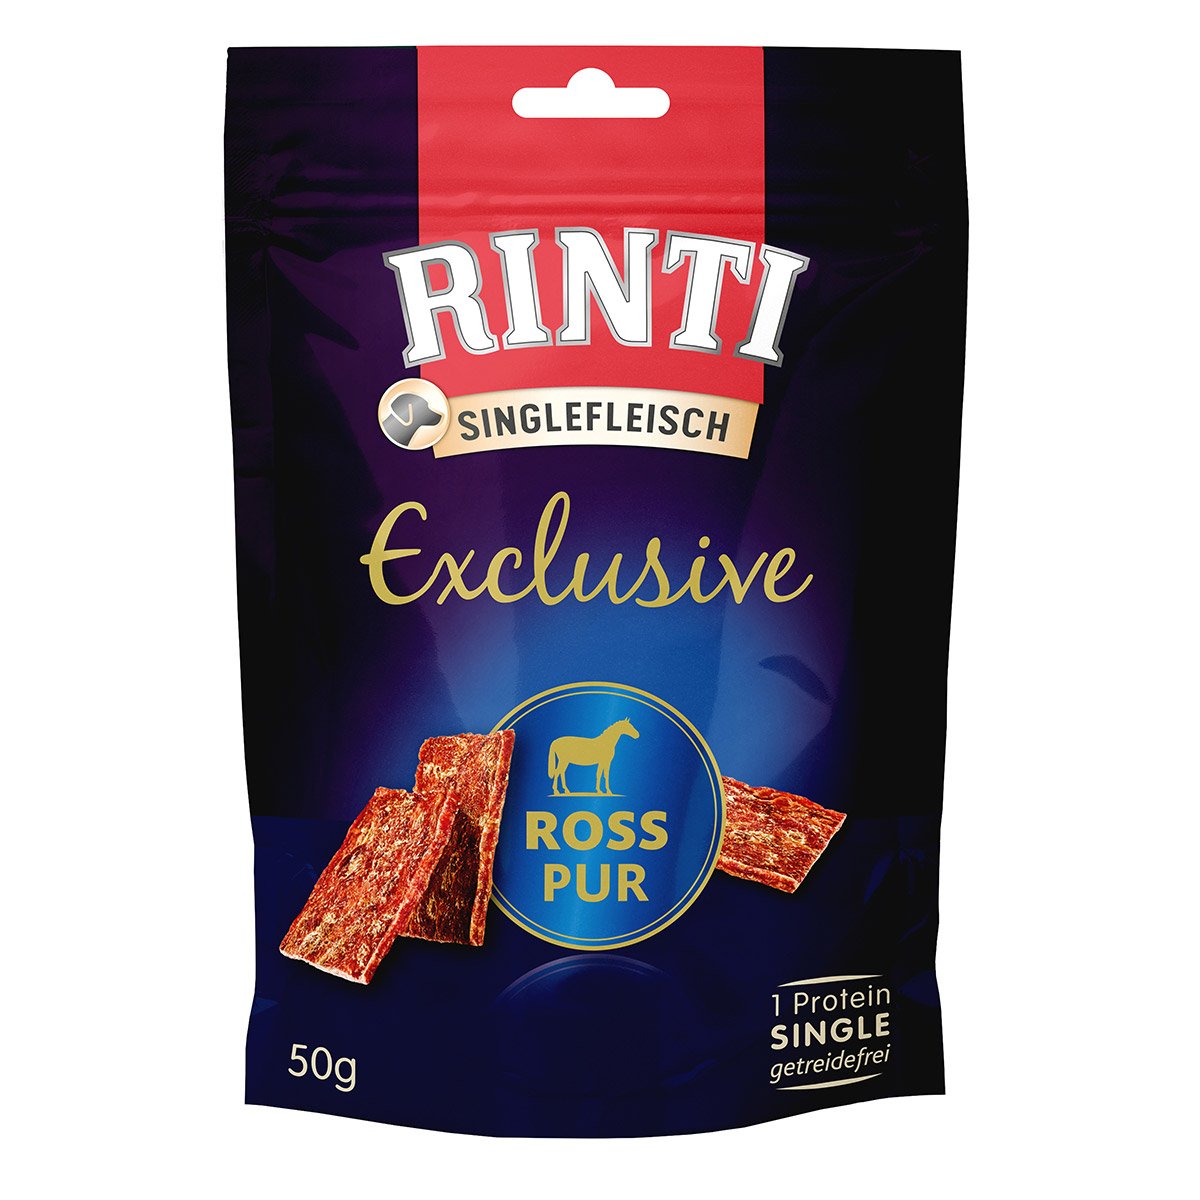 Rinti Singlefleisch Exclusive Snack Ross pur 12x50g